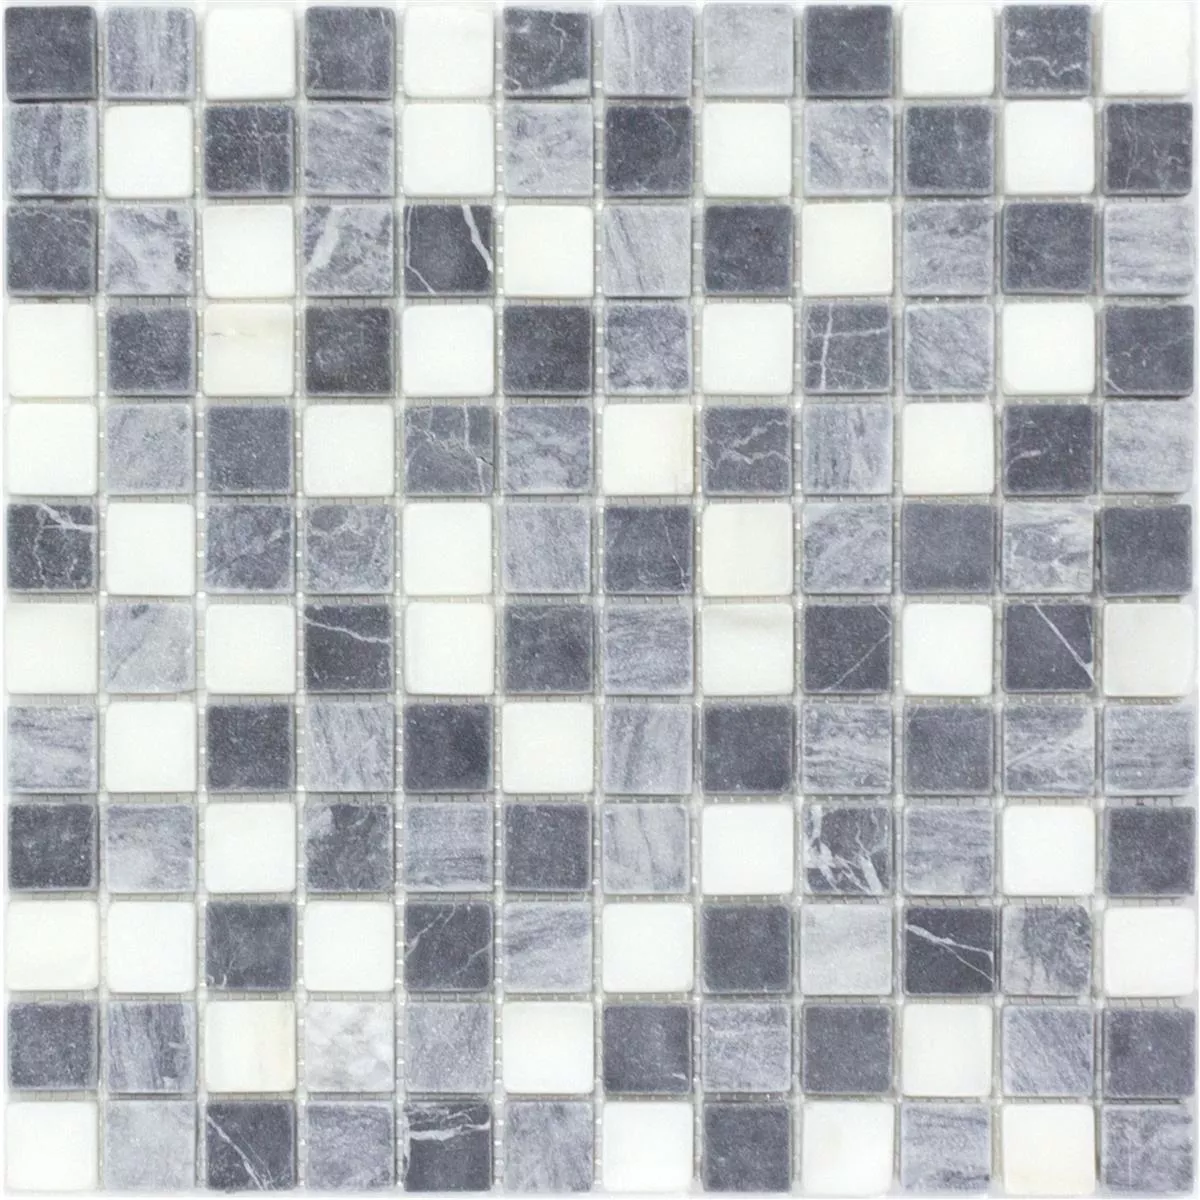 Marmor Naturstein Mosaik Fliesen Stanford Grau Weiß